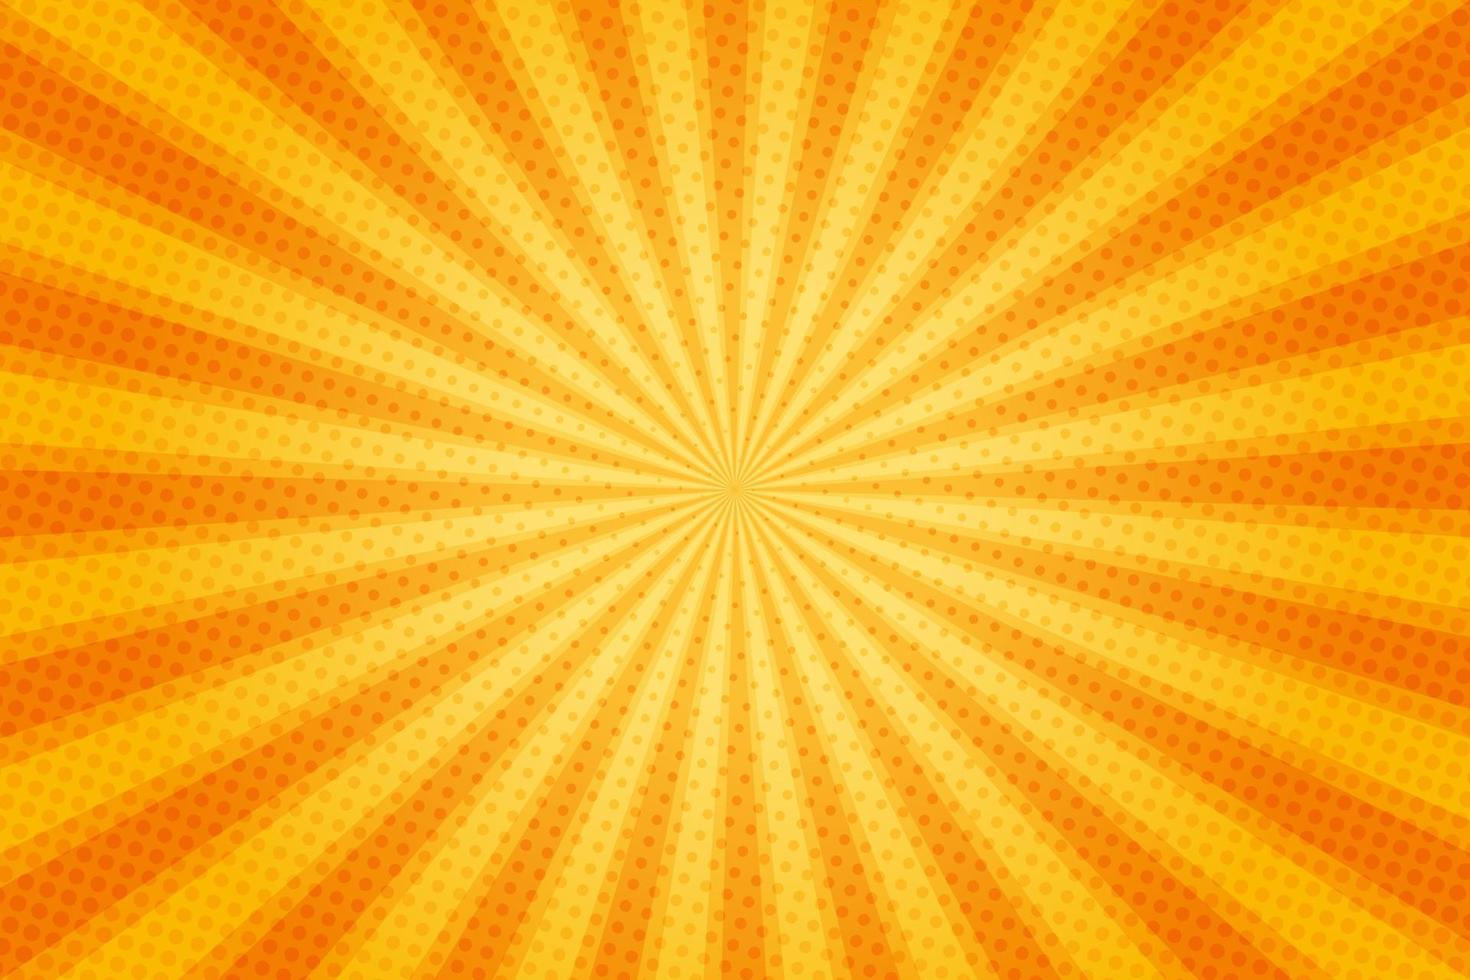 raios de sol estilo vintage retrô em fundo amarelo e laranja, padrão em quadrinhos com starburst e meio-tom. efeito de sunburst retrô dos desenhos animados com pontos. raios. ilustração vetorial de bandeira de verão. vetor